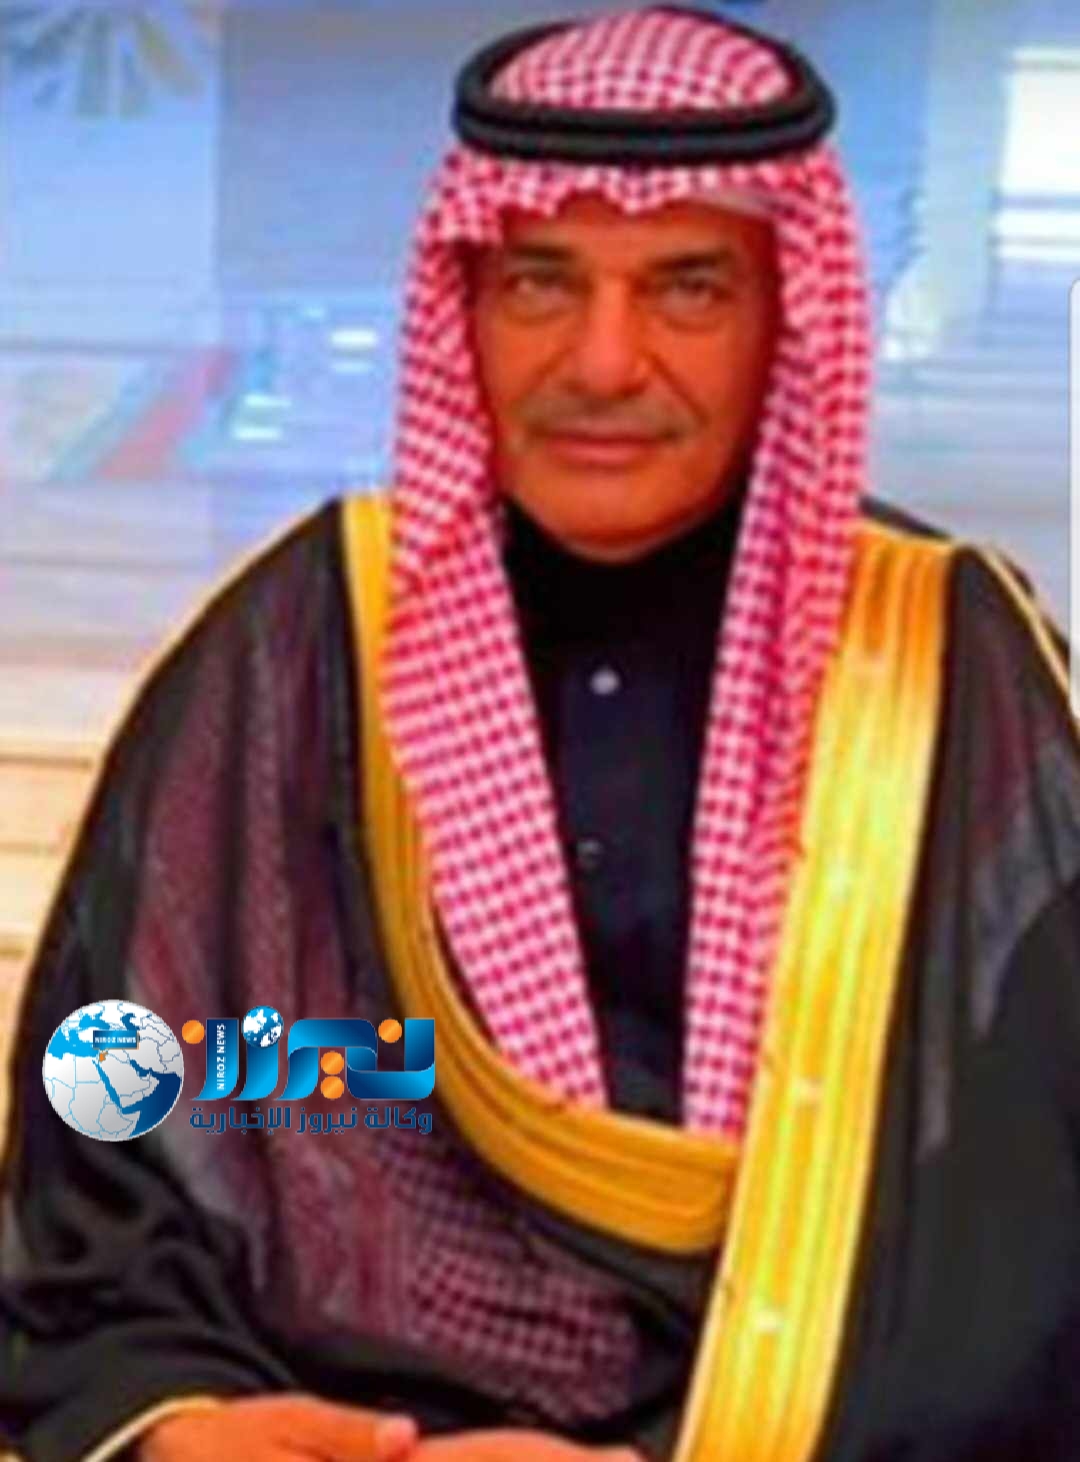 الشيخ محمد مضحي الشمري ... نبض الوطن الصادق الذي نفتخر به